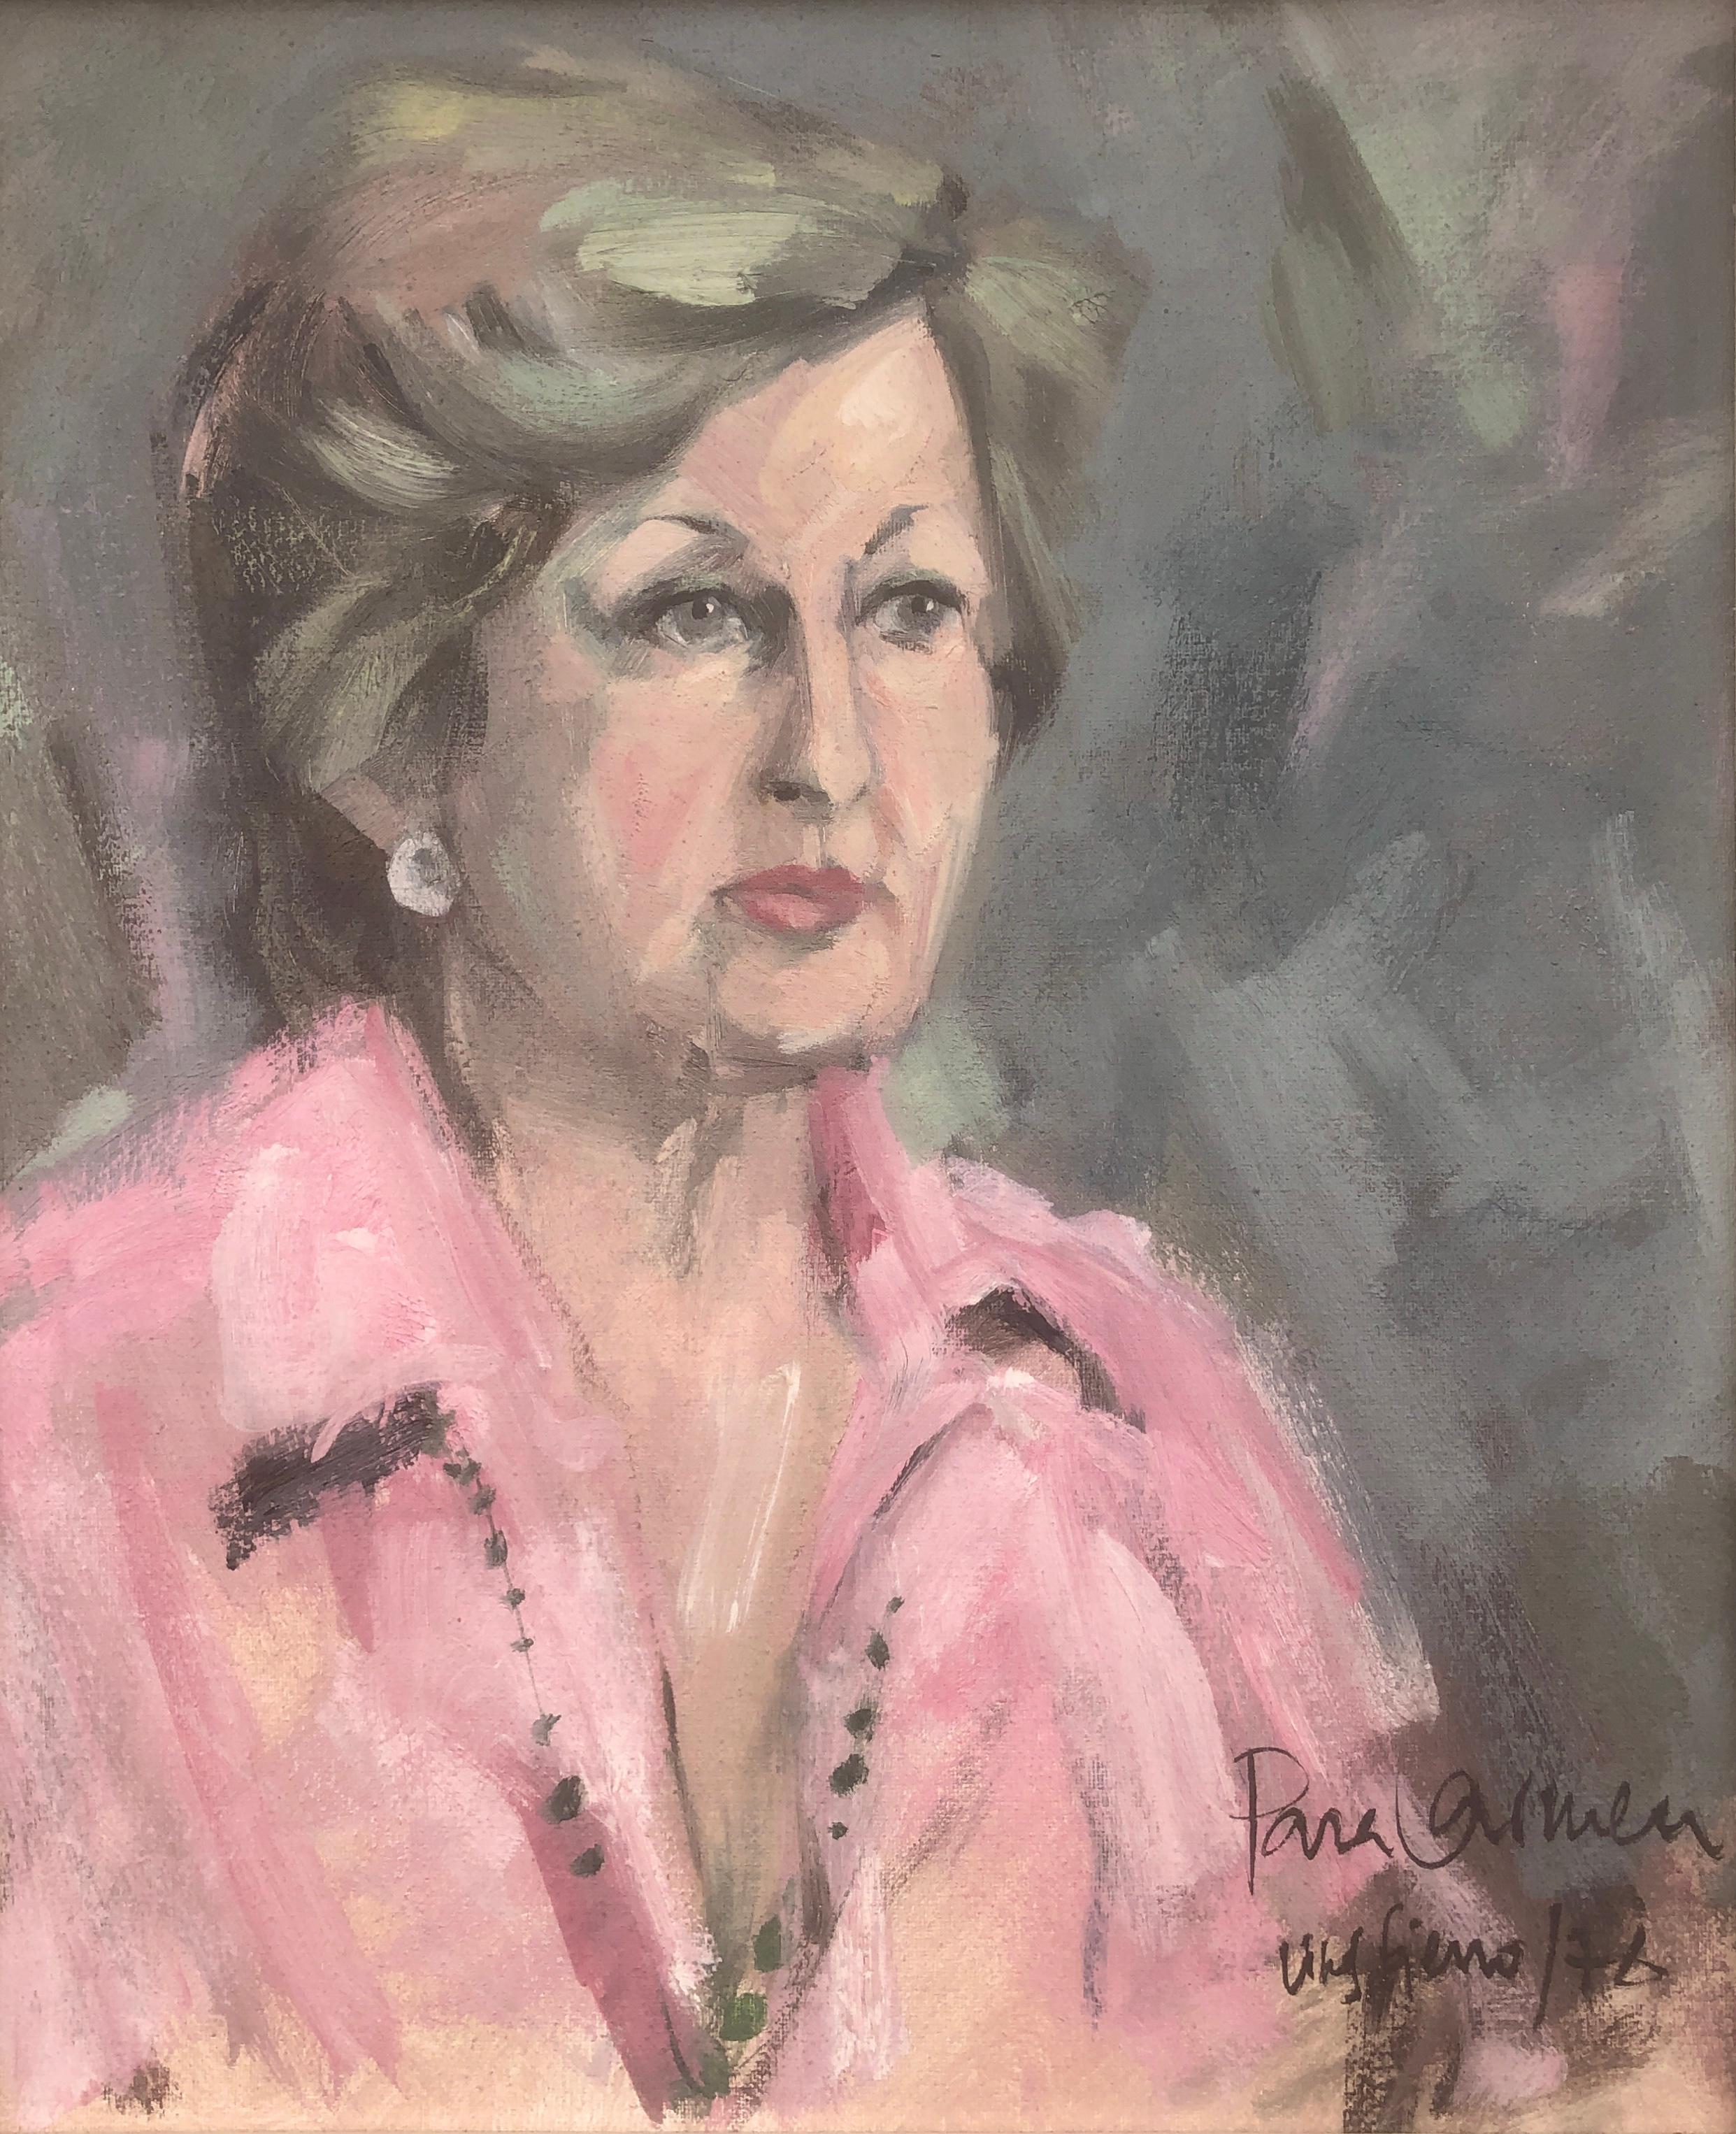 Antoni Vives Fierro Portrait Painting - Woman portrait oil on canvas painting